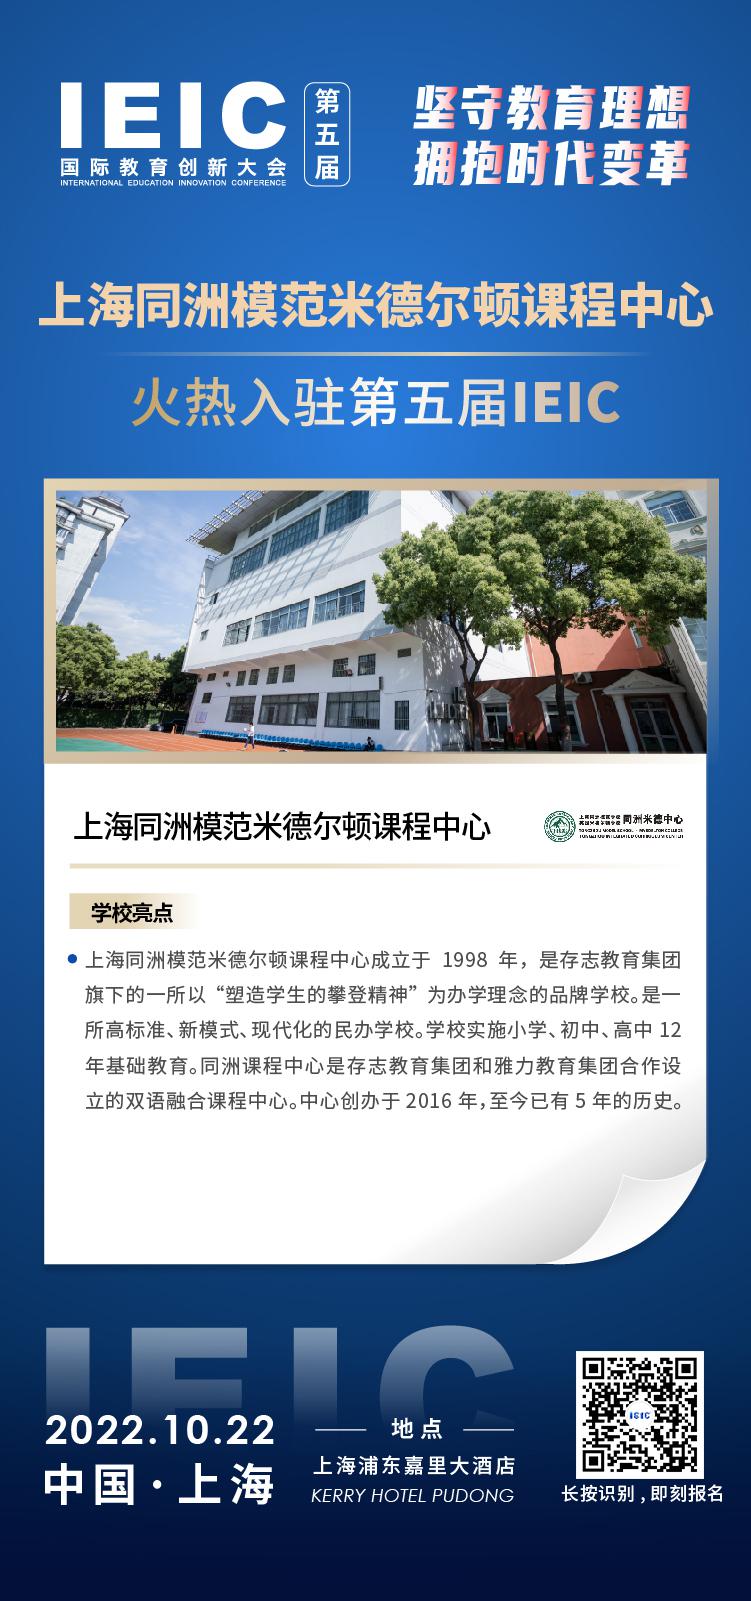 上海同洲模范米德尔顿课程中心成功入驻参加2022年远播第五届IEIC国际教育创新大会